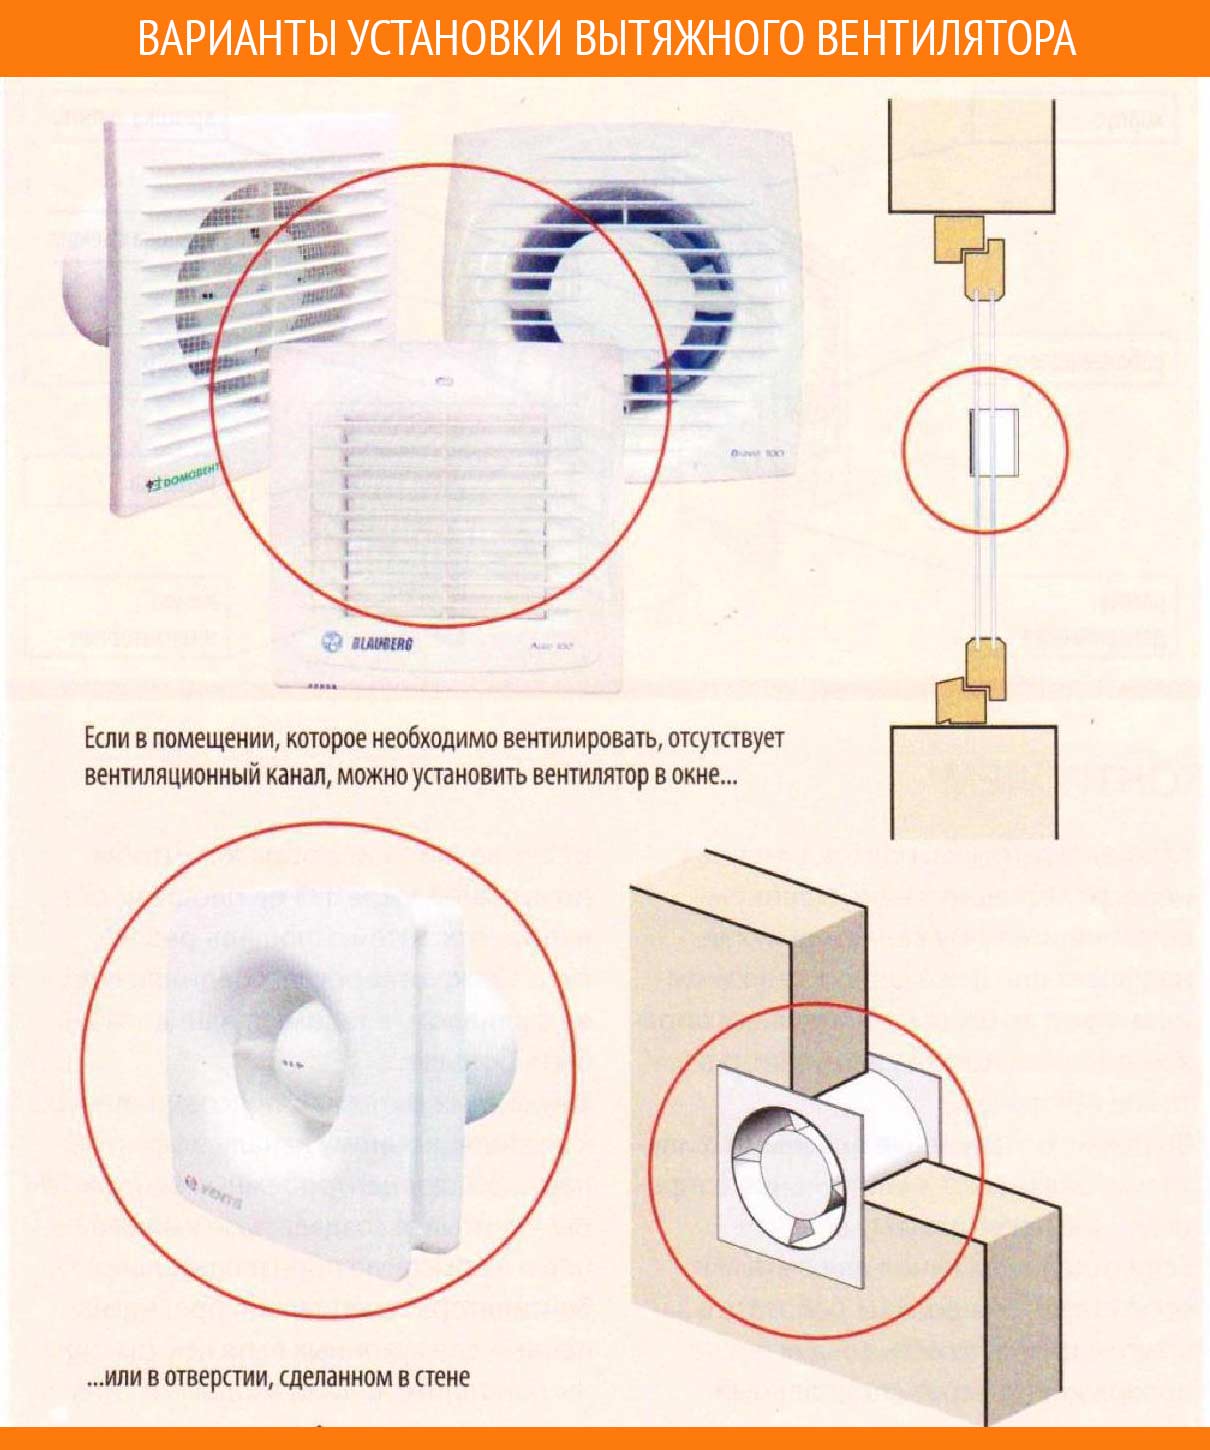 Как подключить вентилятор в ванной комнате к выключателю